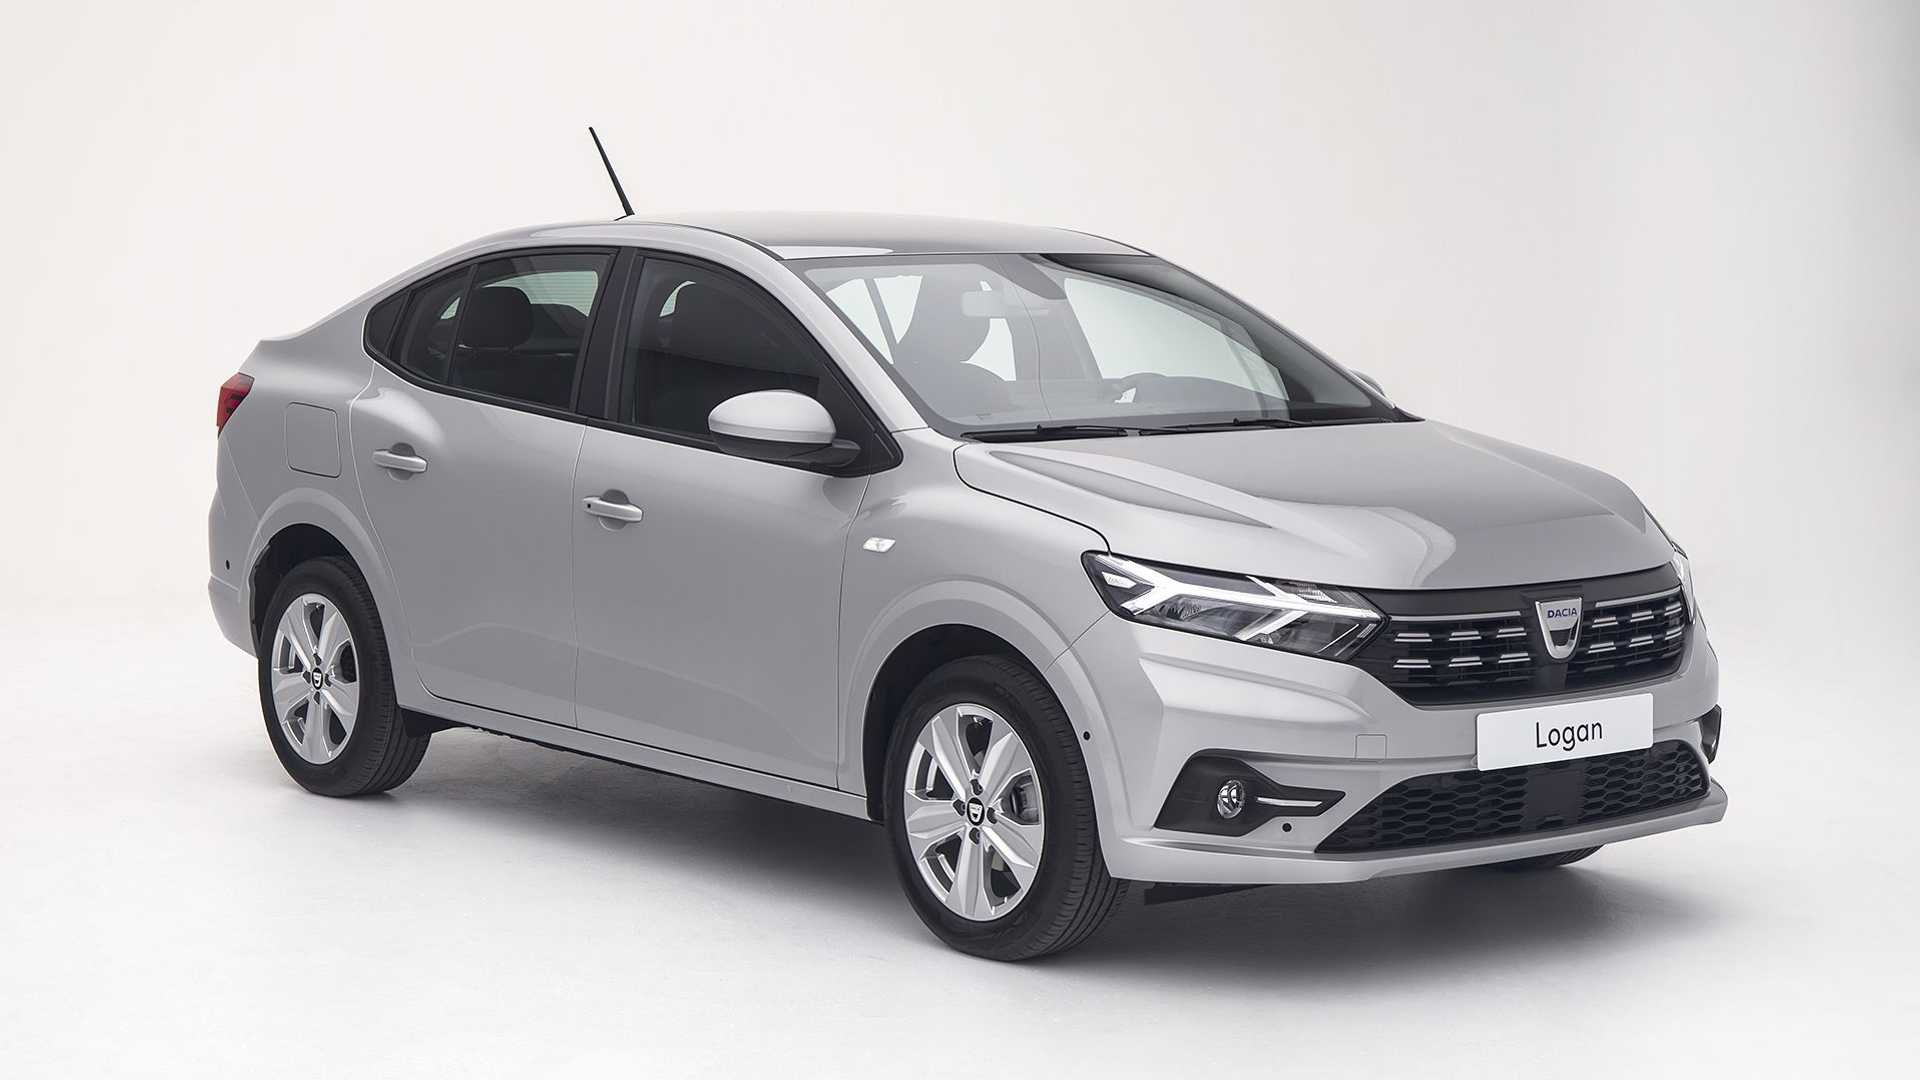 Yeni Dacia Logan Türkiye'de Renault markası altında farklı bir isimle satılacak